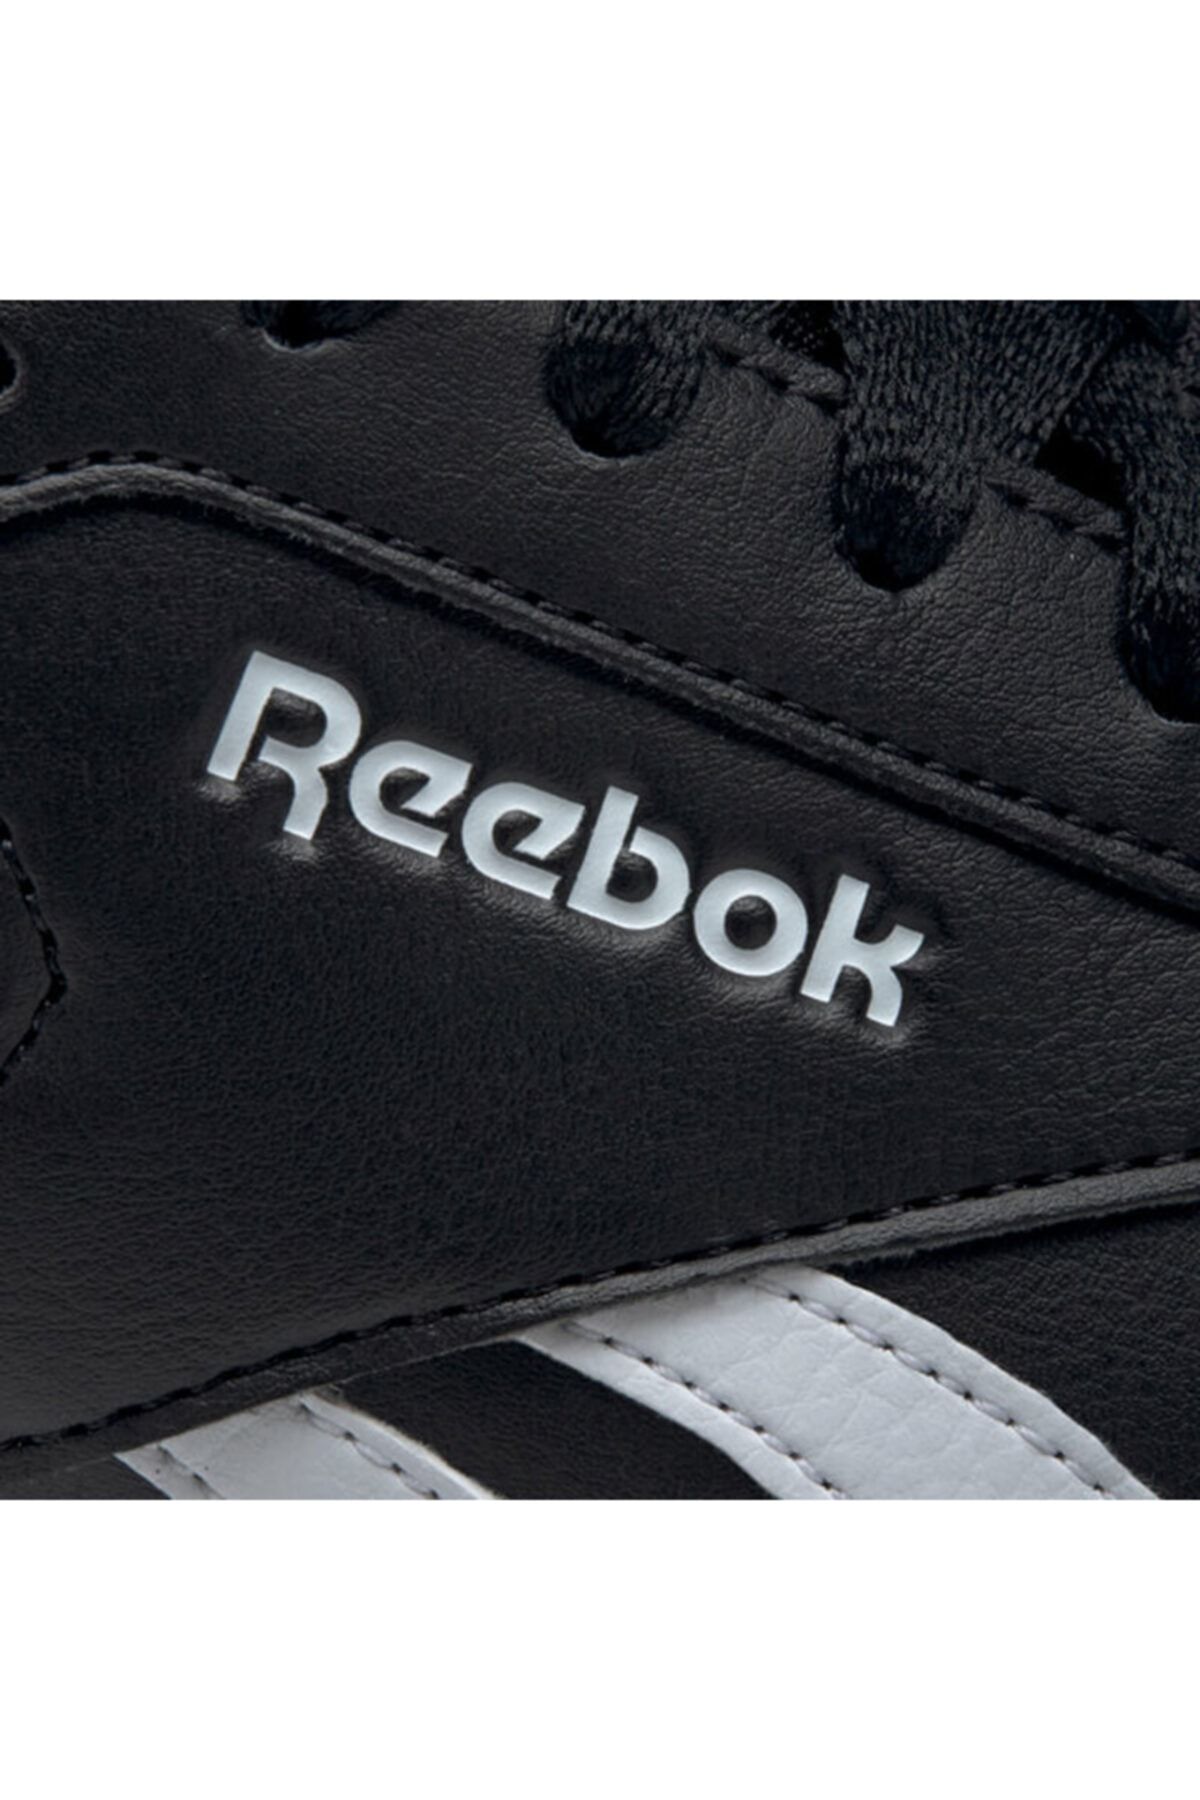 Reebok Reebok Royal Techque T کفش ورزشی مردانه سفید رنگ 100351421